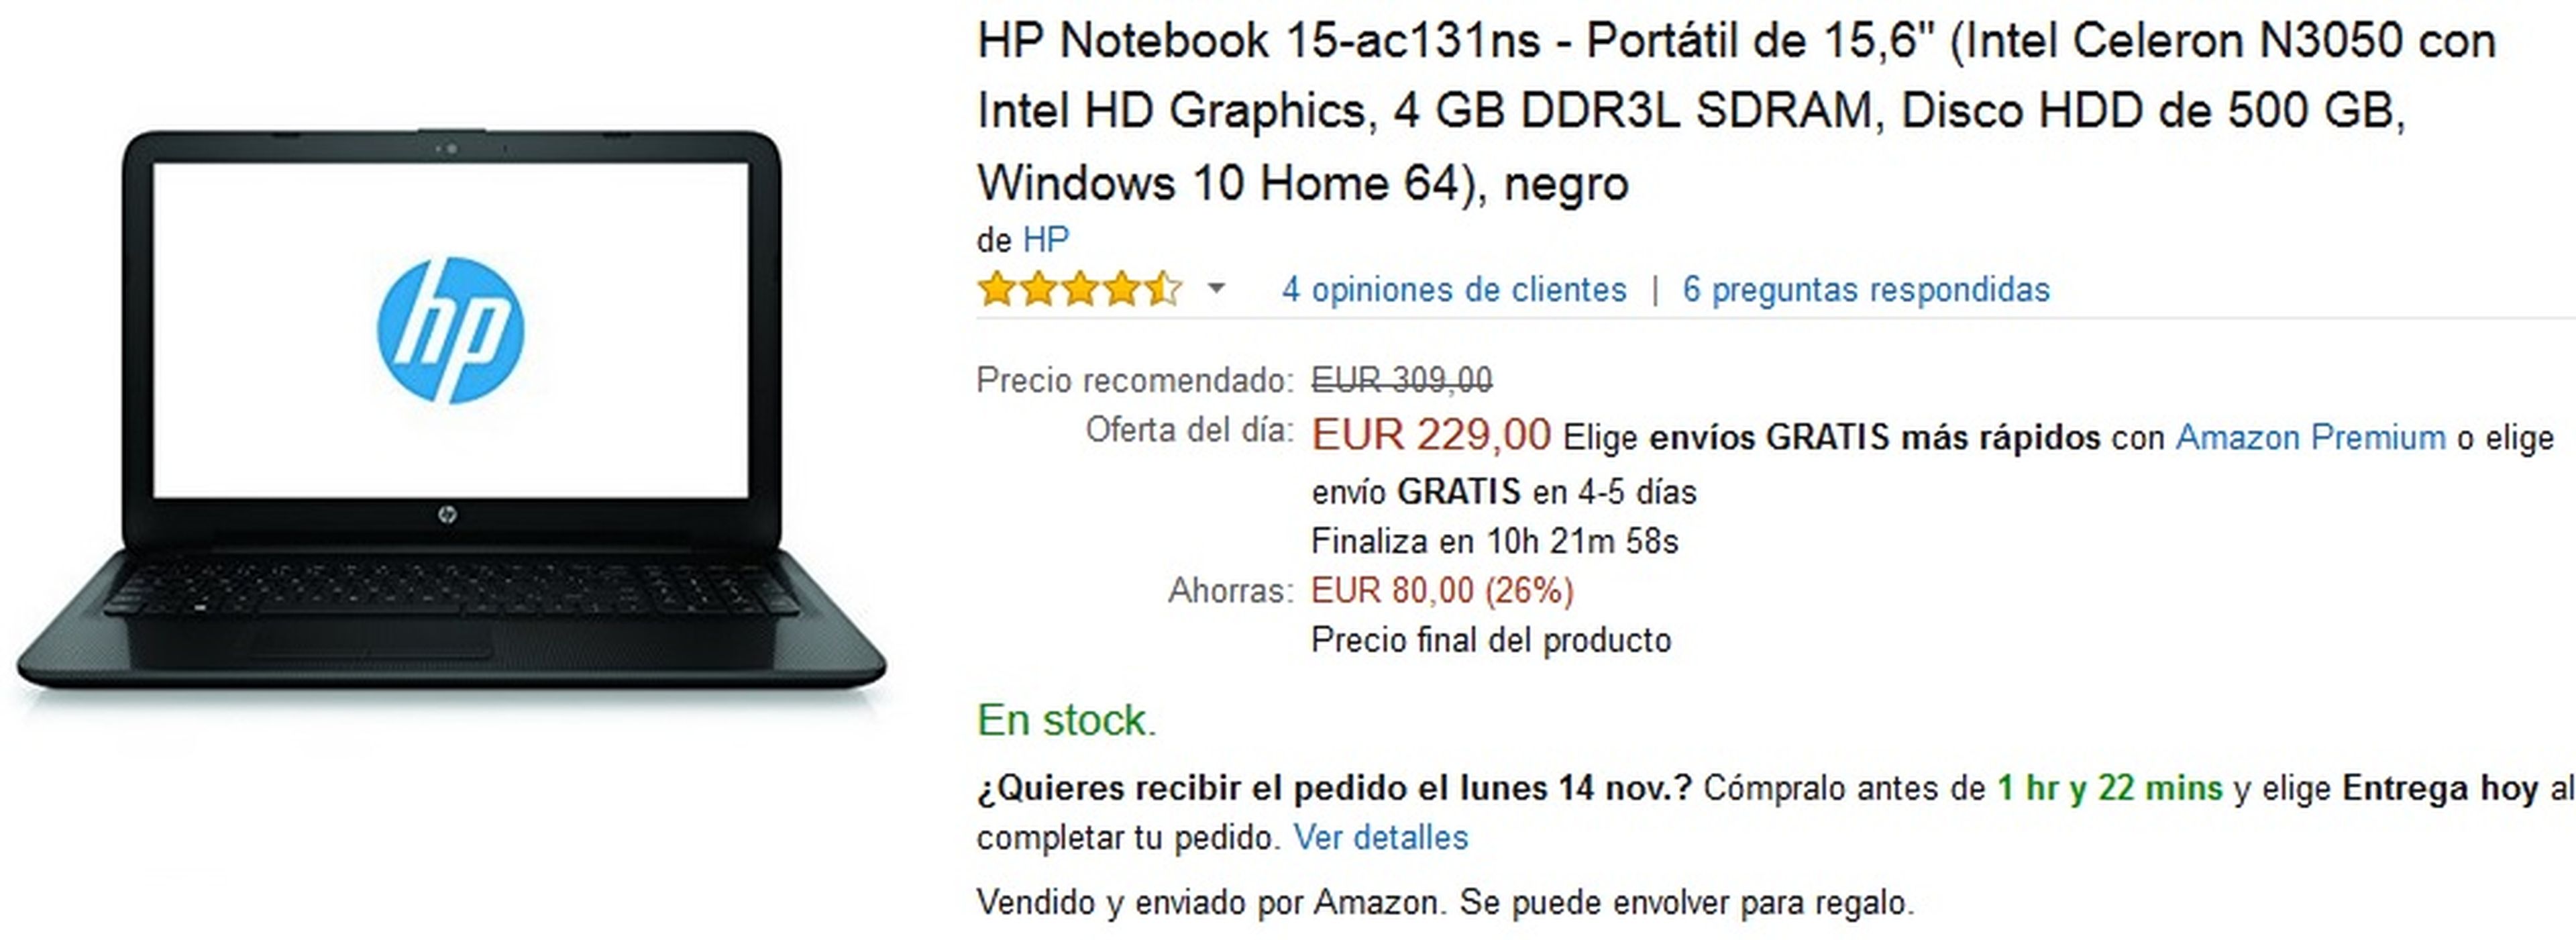 Portátil HP Notebook 15-ac131ns